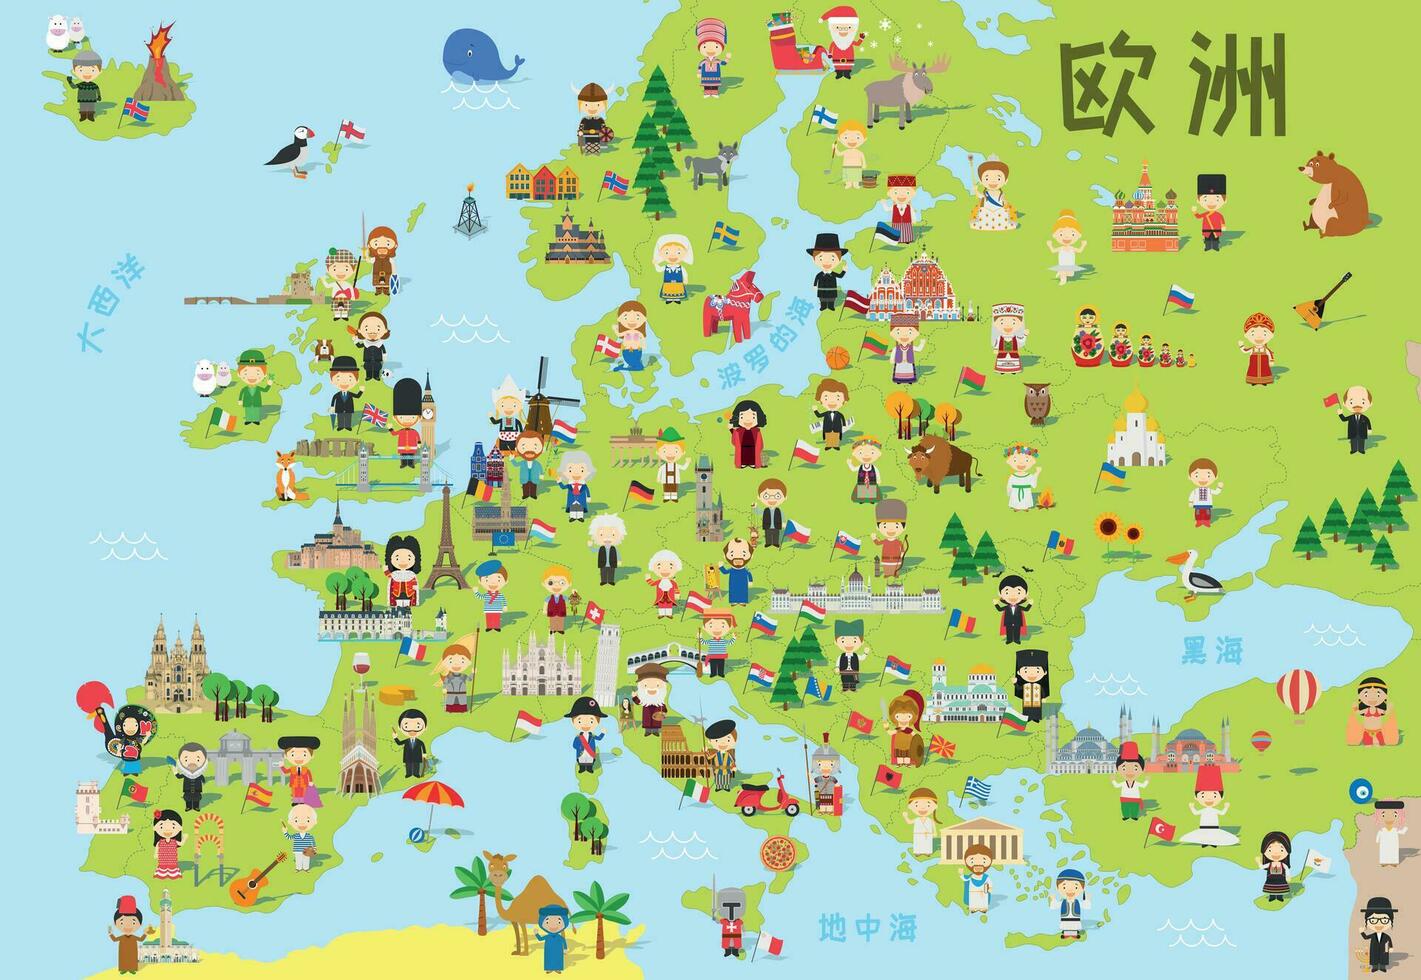 grappig tekenfilm kaart van Europa in Chinese met kinderen van verschillend nationaliteiten, monumenten, dieren en voorwerpen van allemaal de landen. vector illustratie voor peuter- onderwijs en kinderen ontwerp.